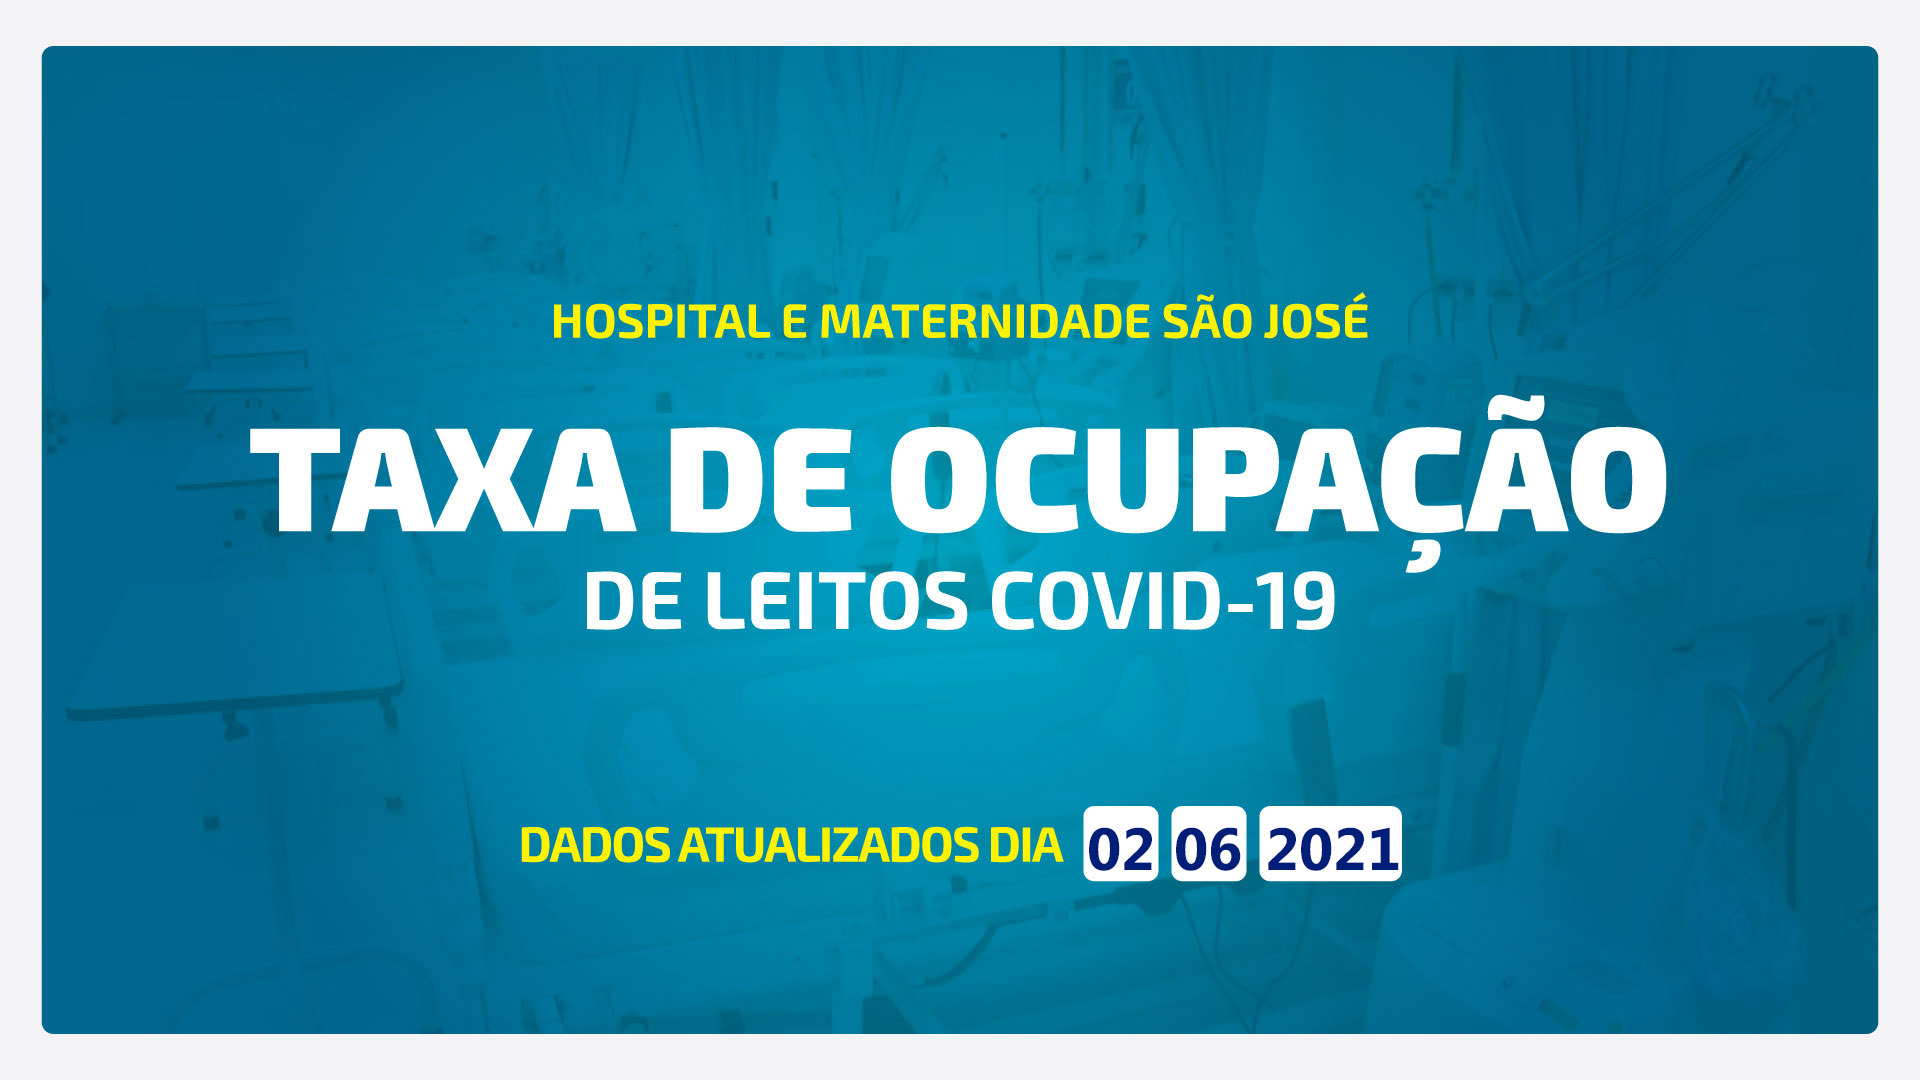 TAXA DE OCUPAÇÃO DE LEITOS DE COVID-19 ATUALIZADA DIA 02/06/2021